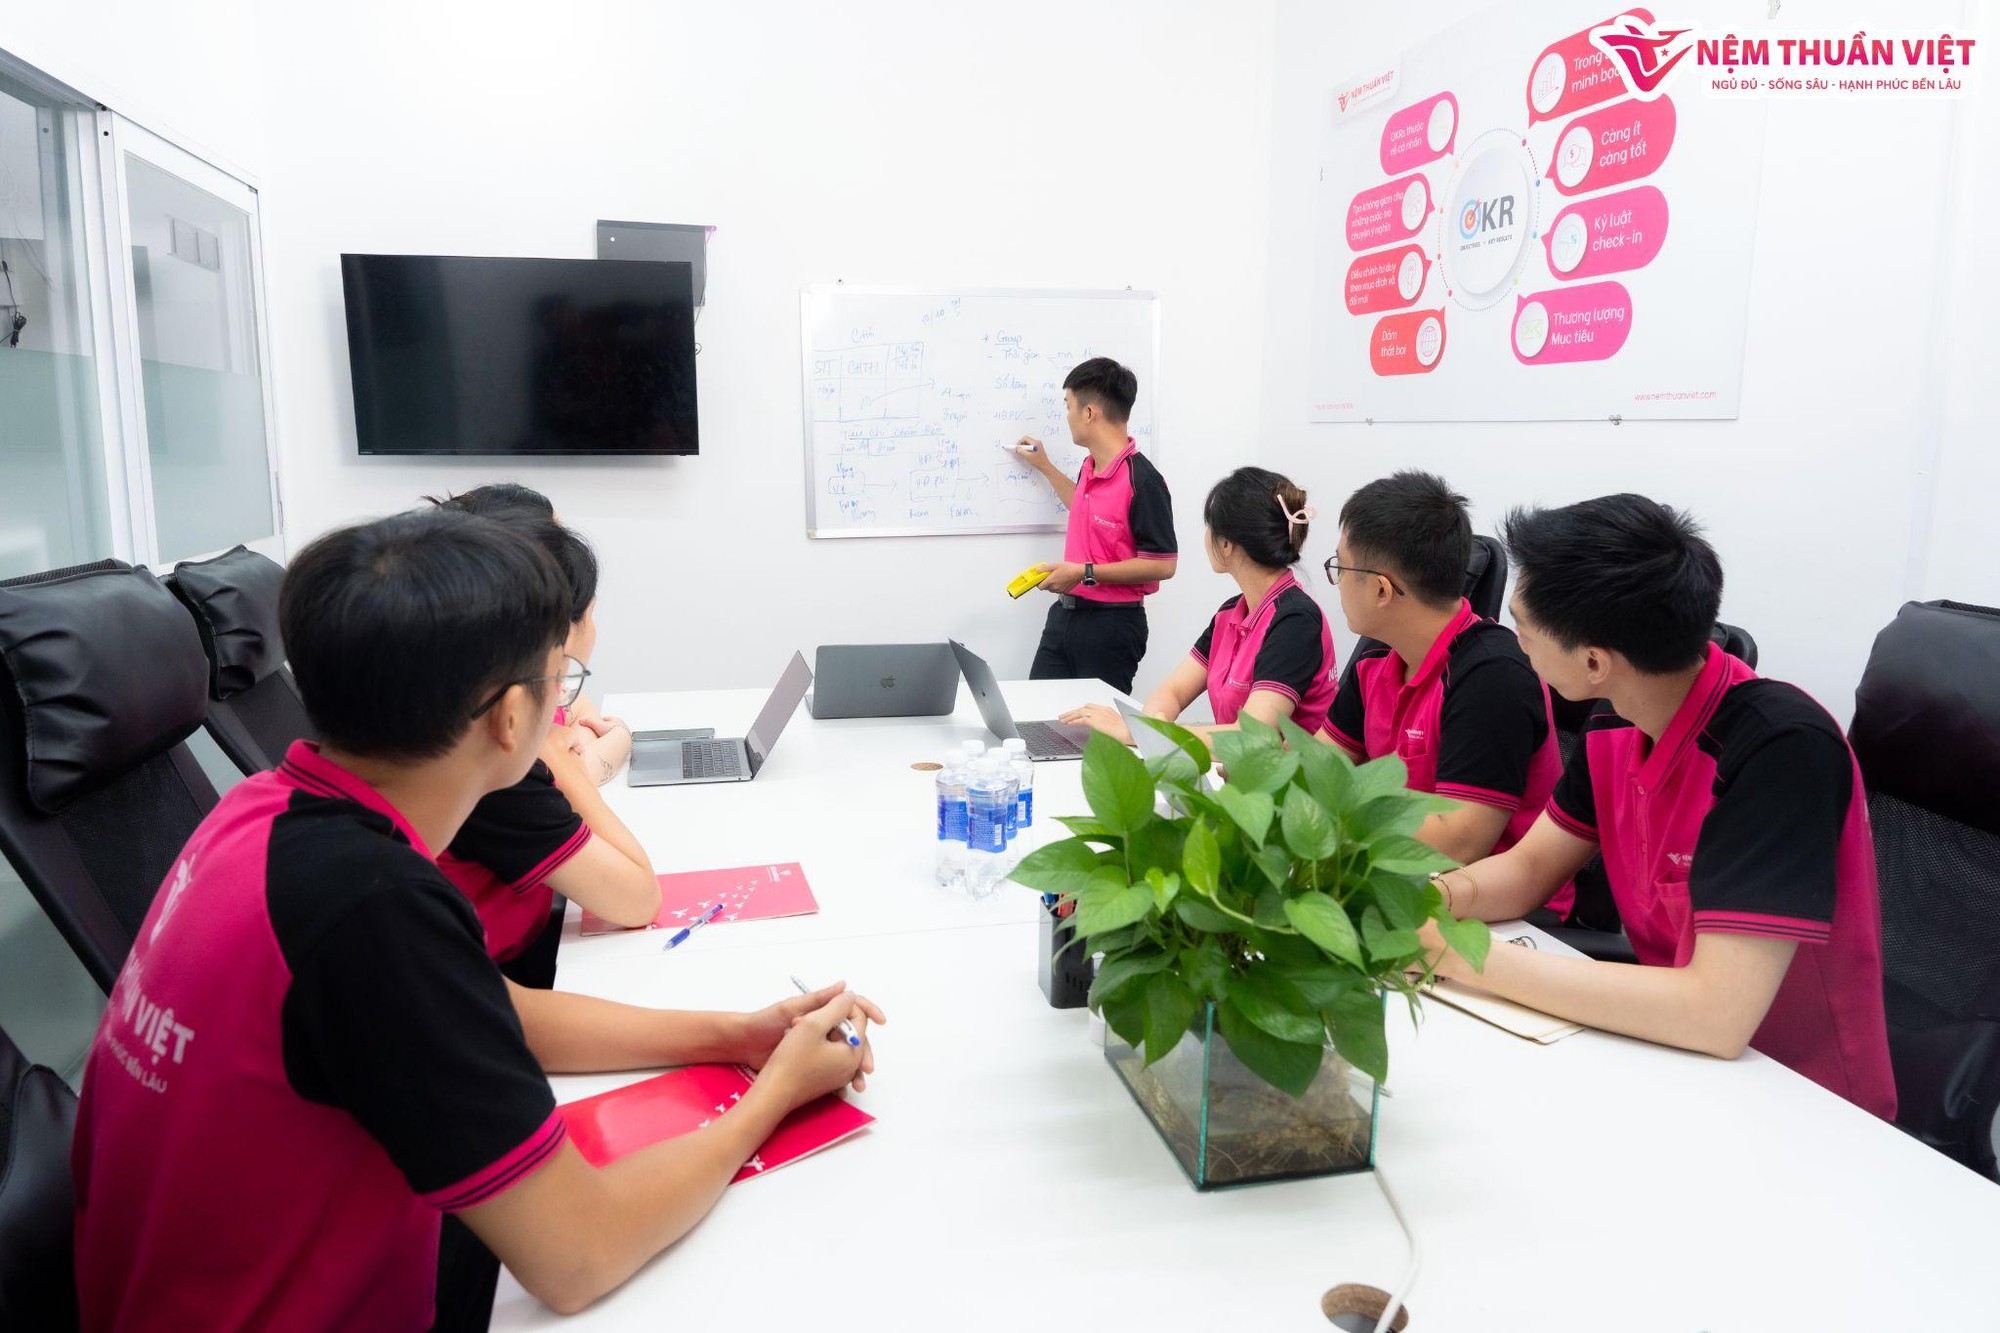 Nệm Thuần Việt sở hữu ban lãnh đạo đầy tài năng với CEO chỉ mới 26 tuổi - Ảnh 3.